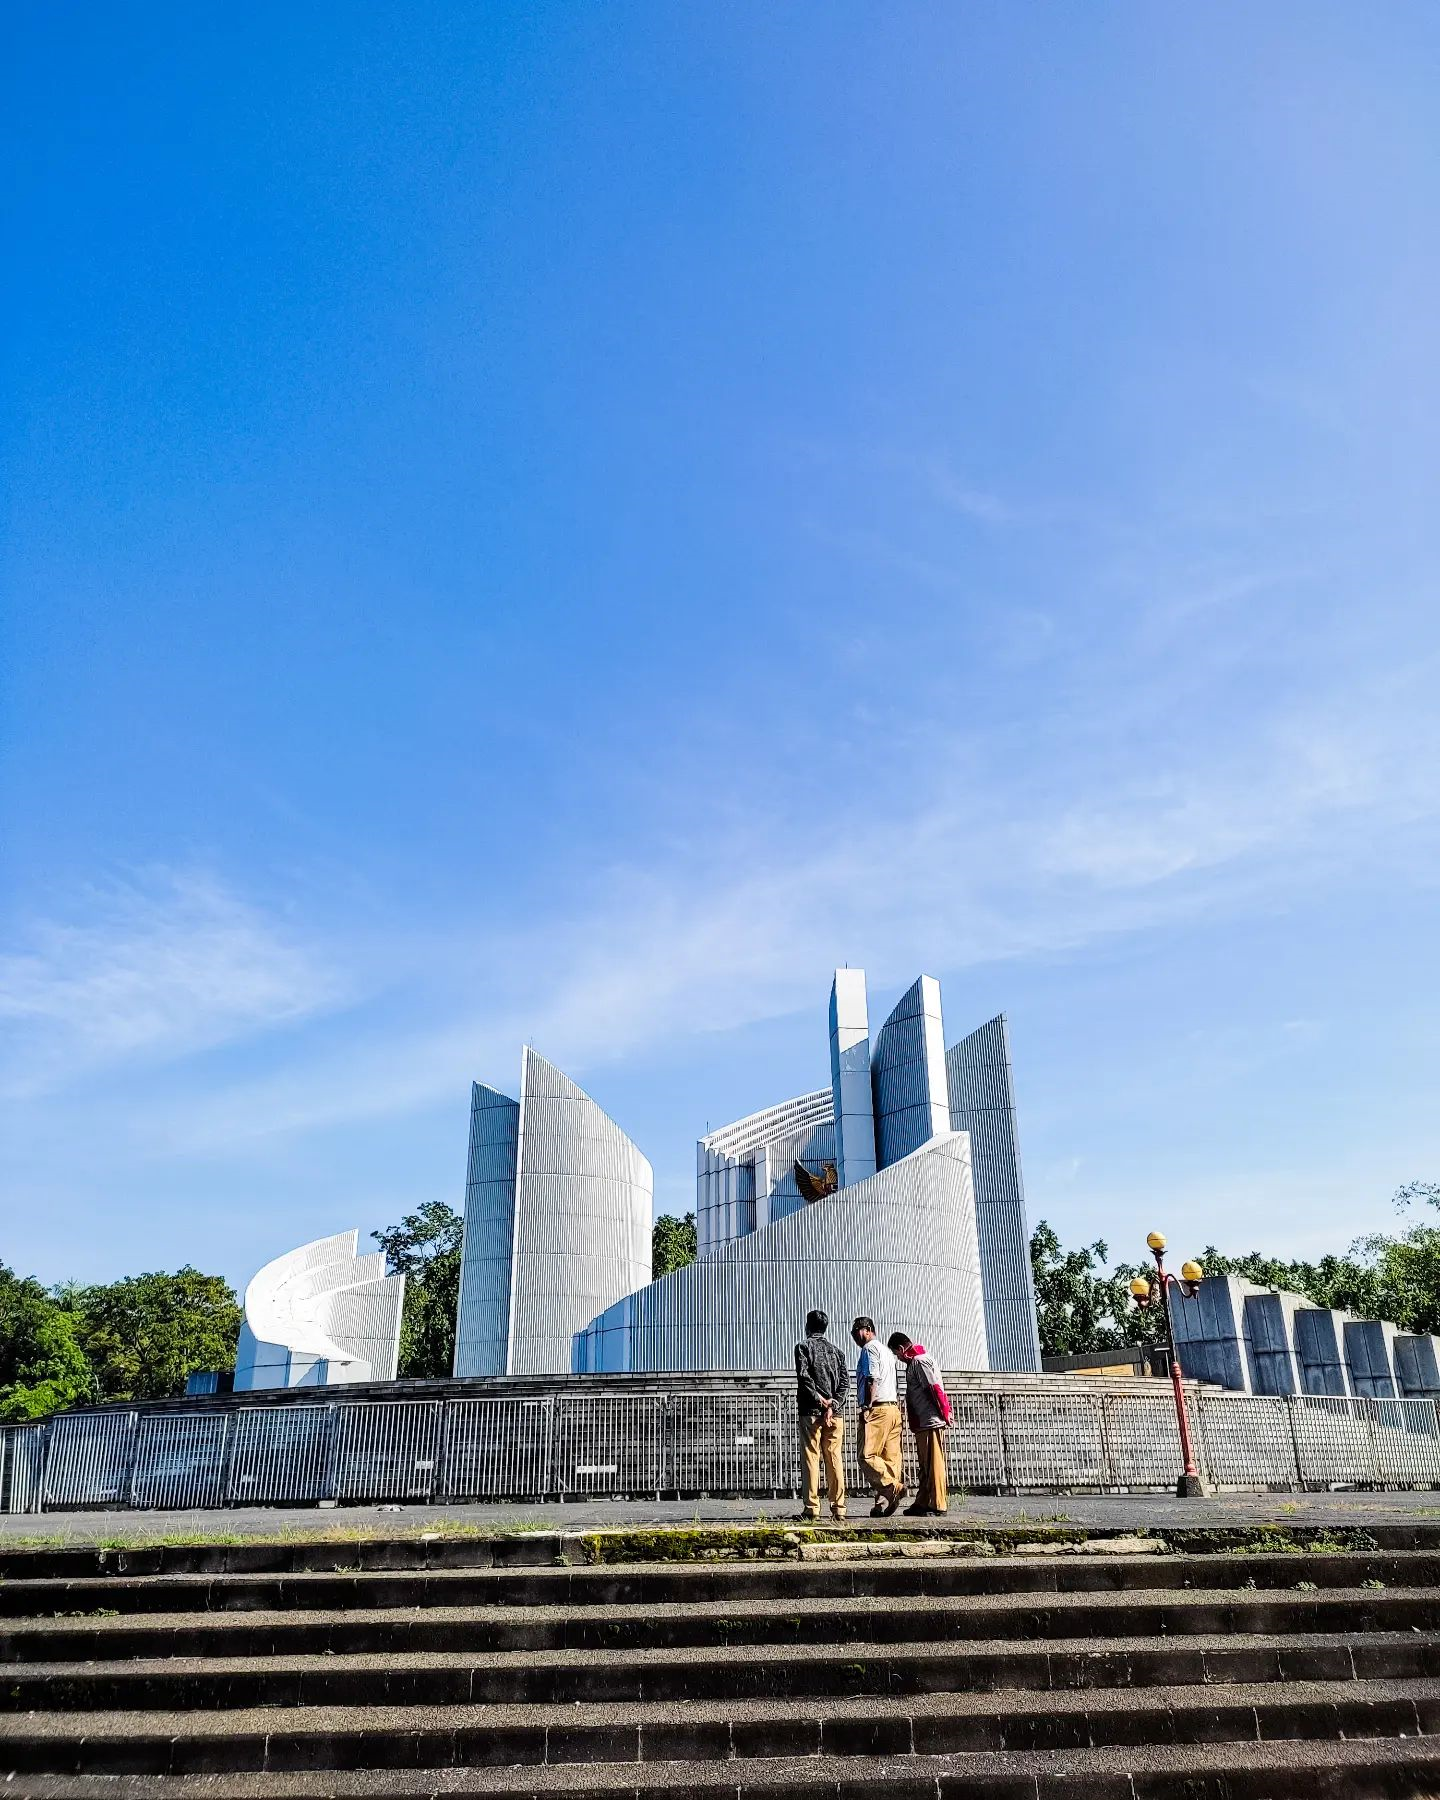 Daya Tarik Wisata Monumen Perjuangan Rakyat Jawa Barat